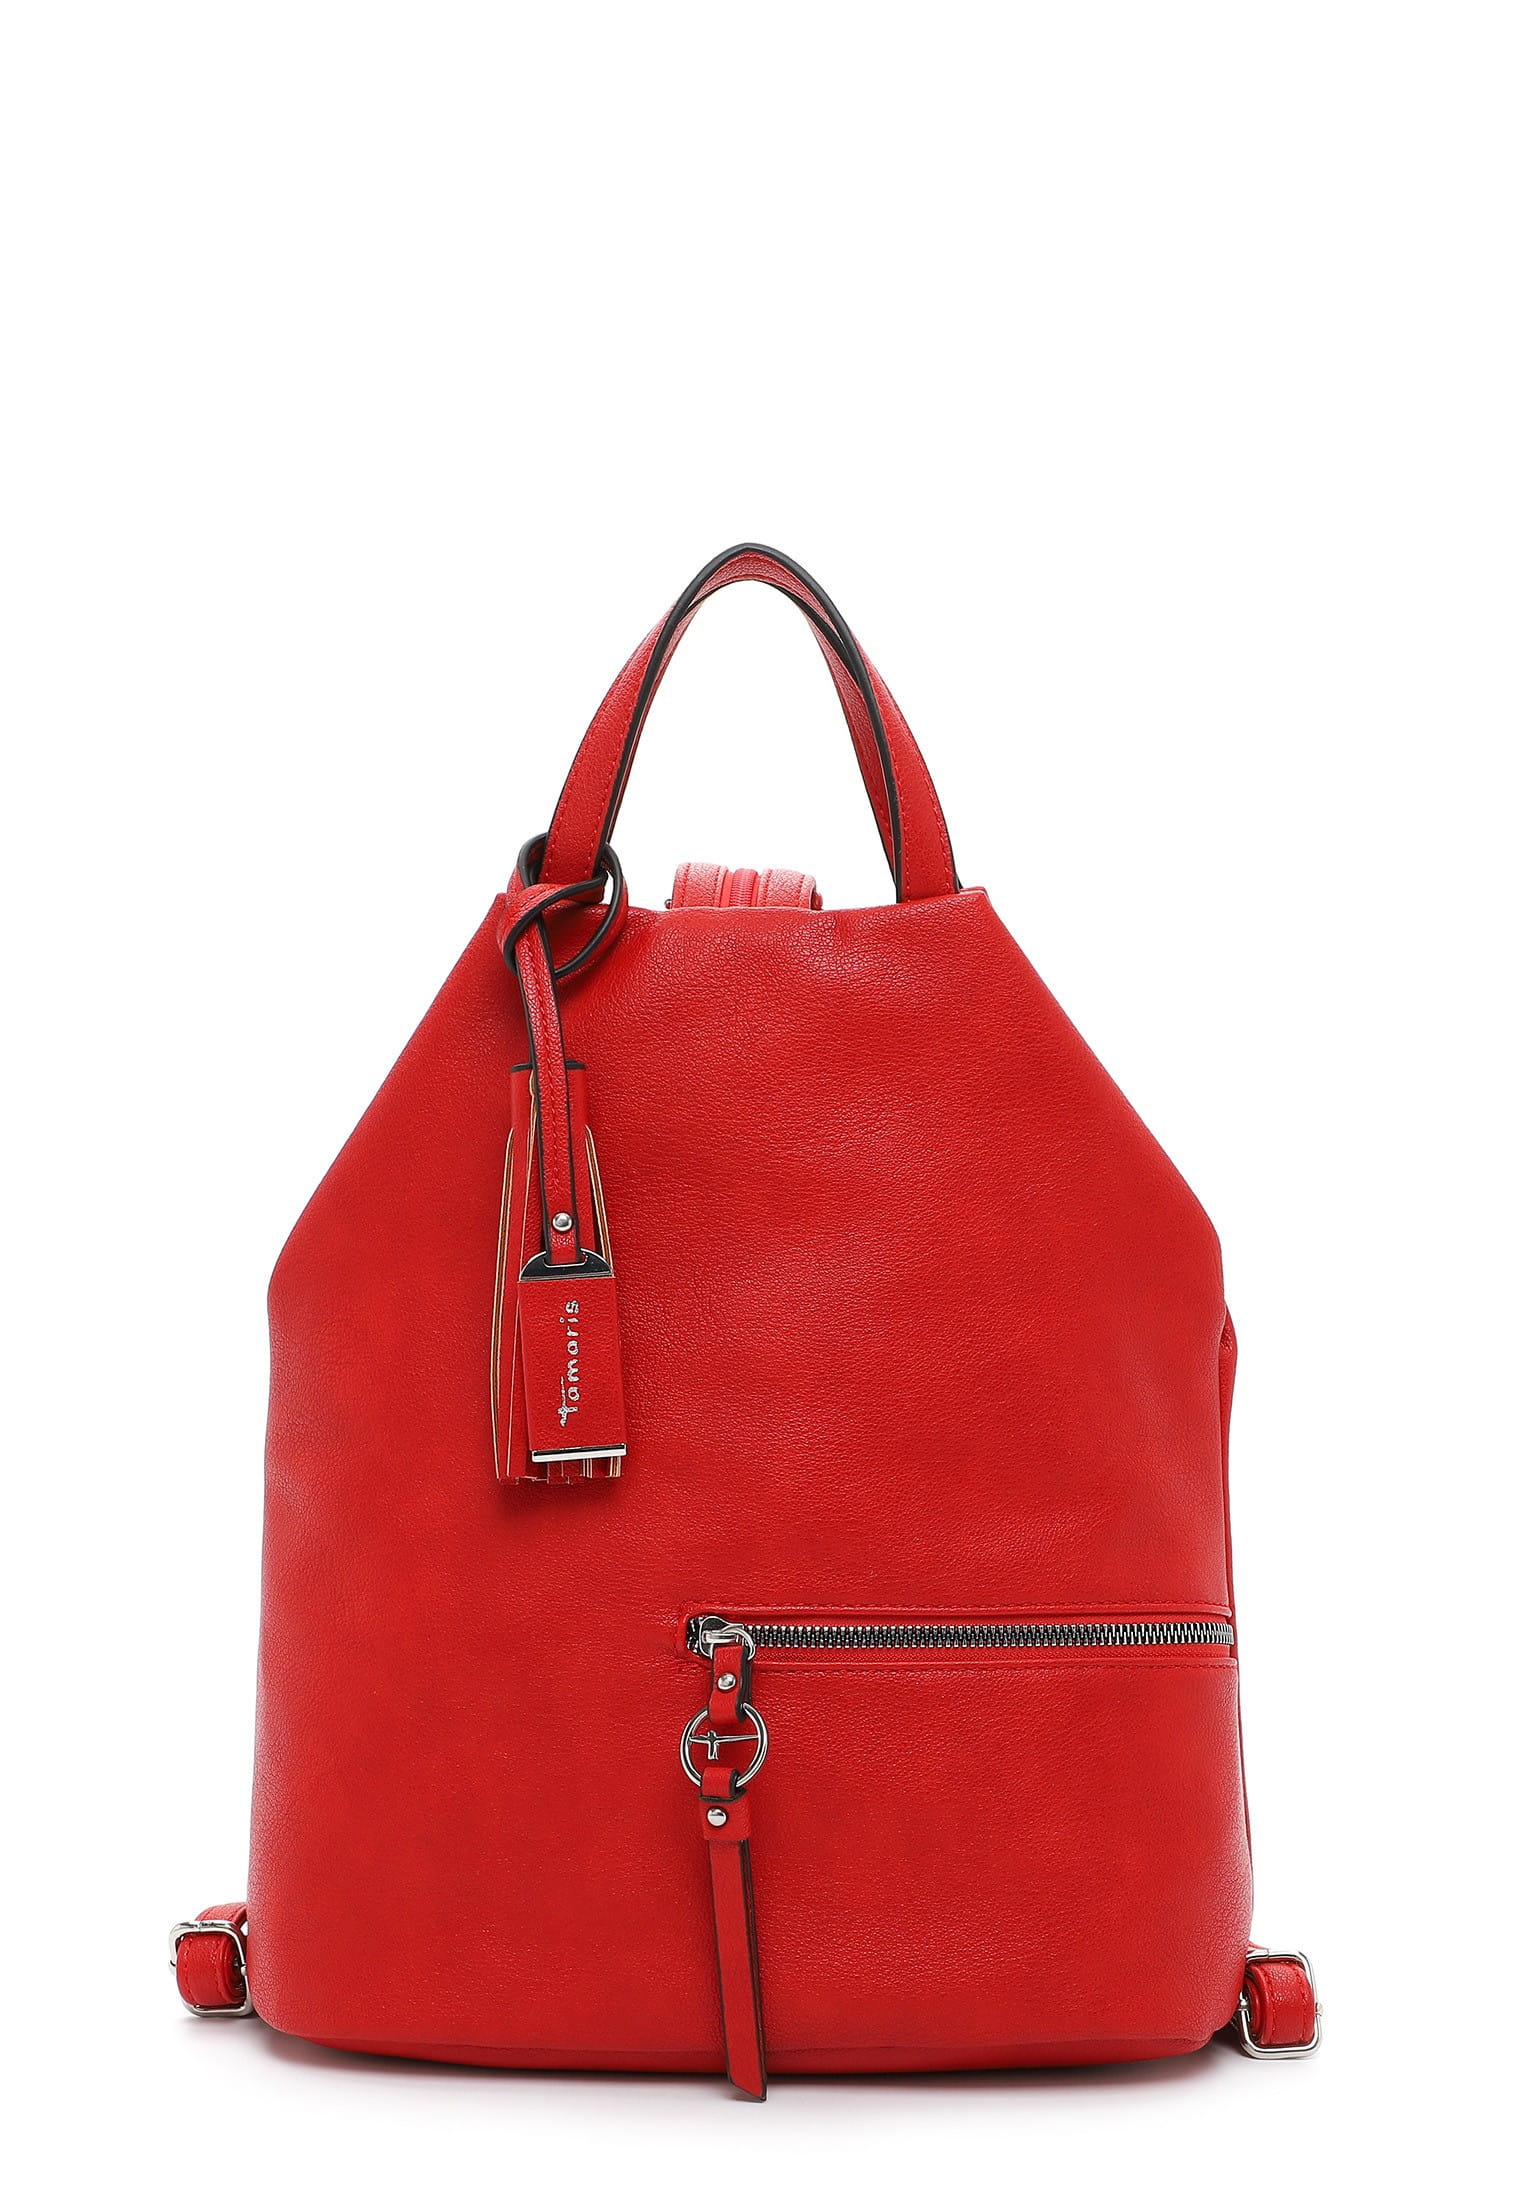 Рюкзак Tamaris TAS Nele, красный сумка для покупок tas nele tamaris красный